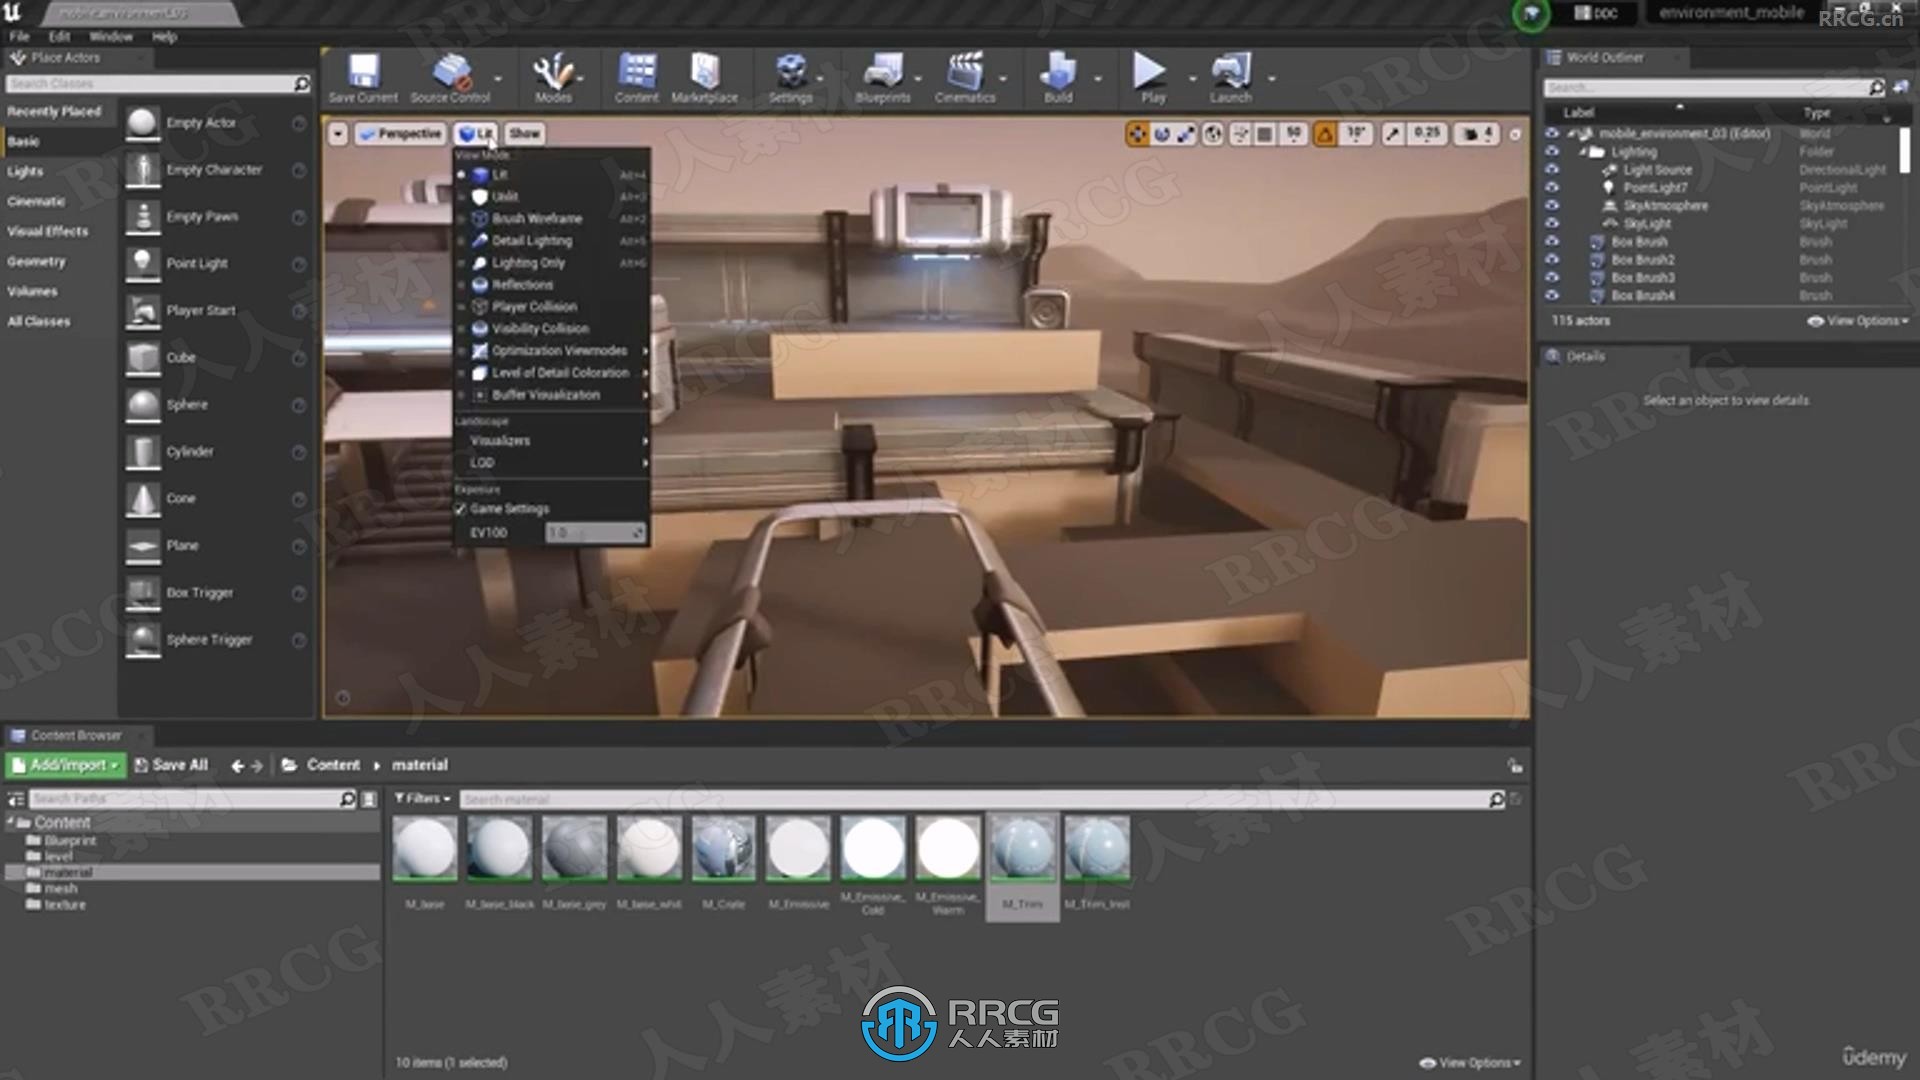 UE5虚幻引擎VR虚拟现实游戏环境制作视频教程